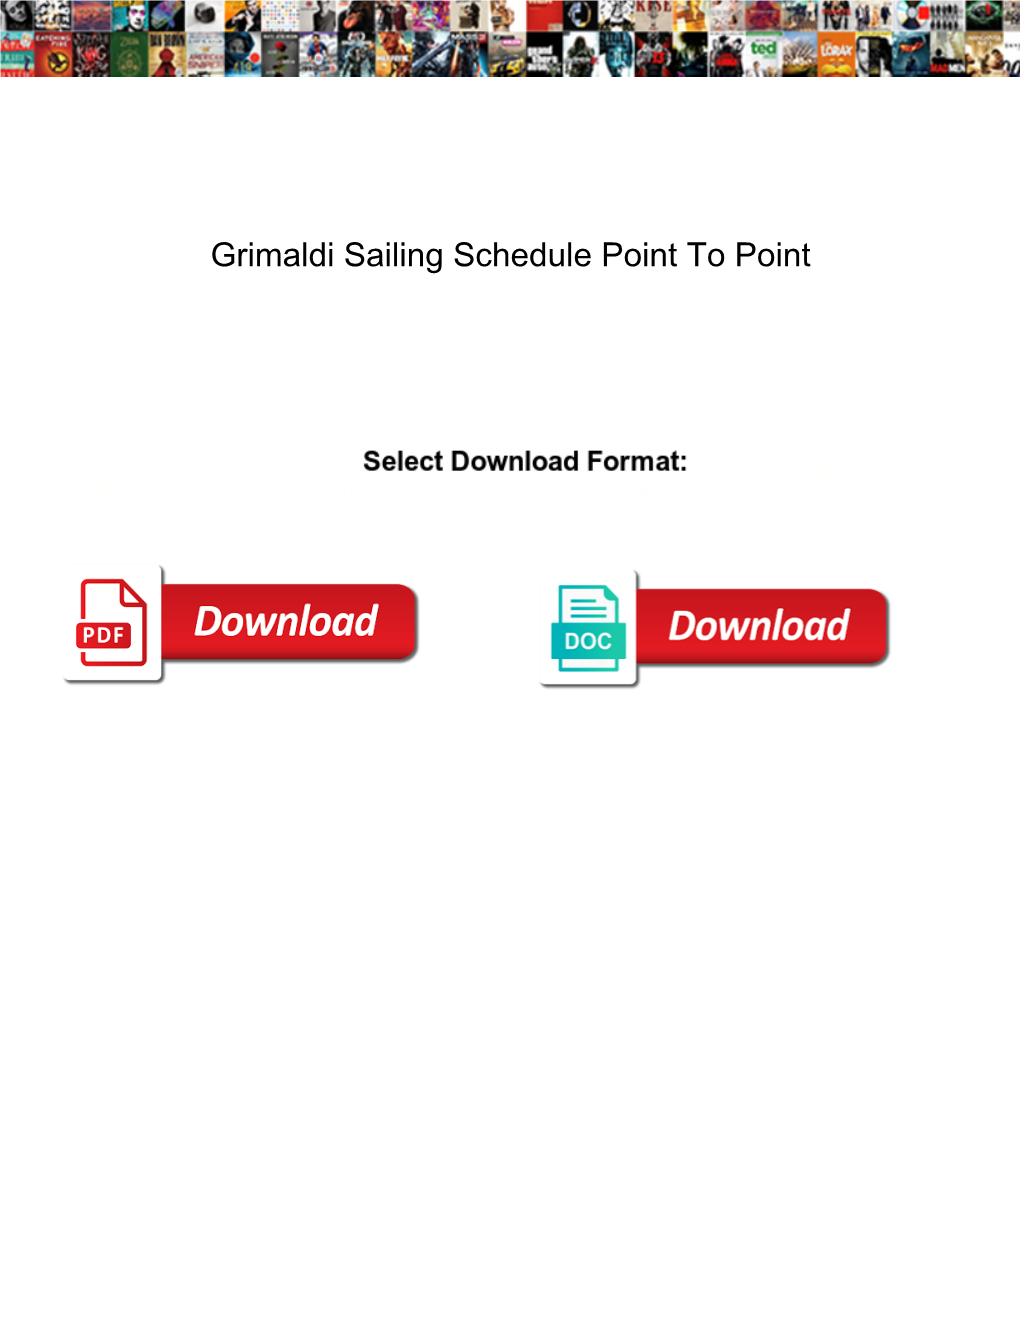 Grimaldi Sailing Schedule Point to Point